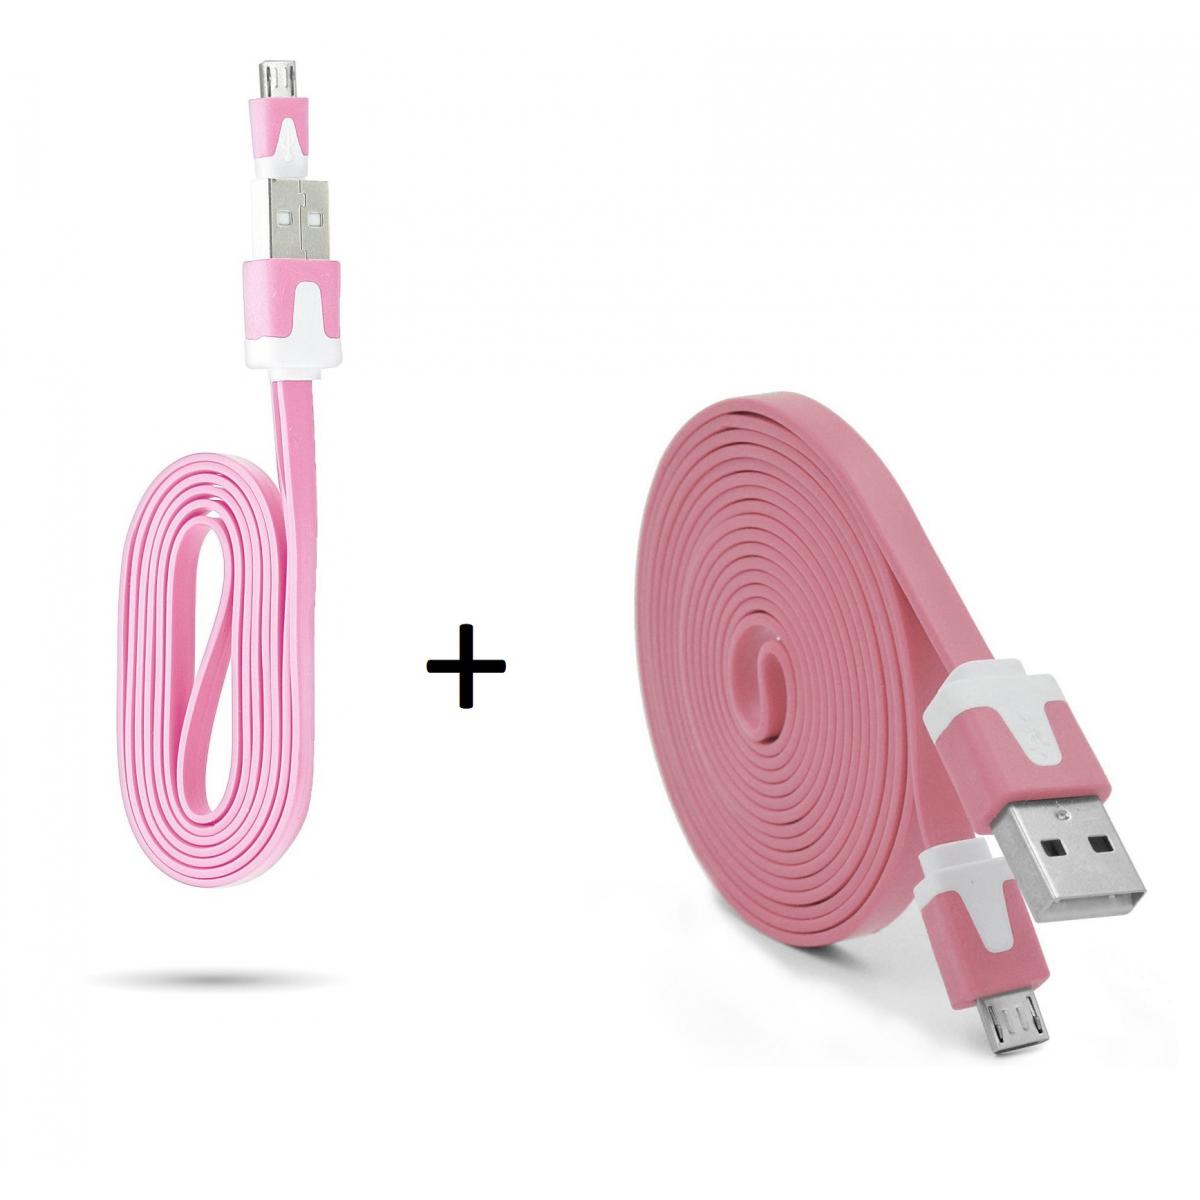 Shot - Pack Chargeur pour Ultimate Ears WONDERBOOM 2 Smartphone Micro USB (Cable Noodle 3m + Cable Noodle 1m) Android (ROSE) - Chargeur secteur téléphone